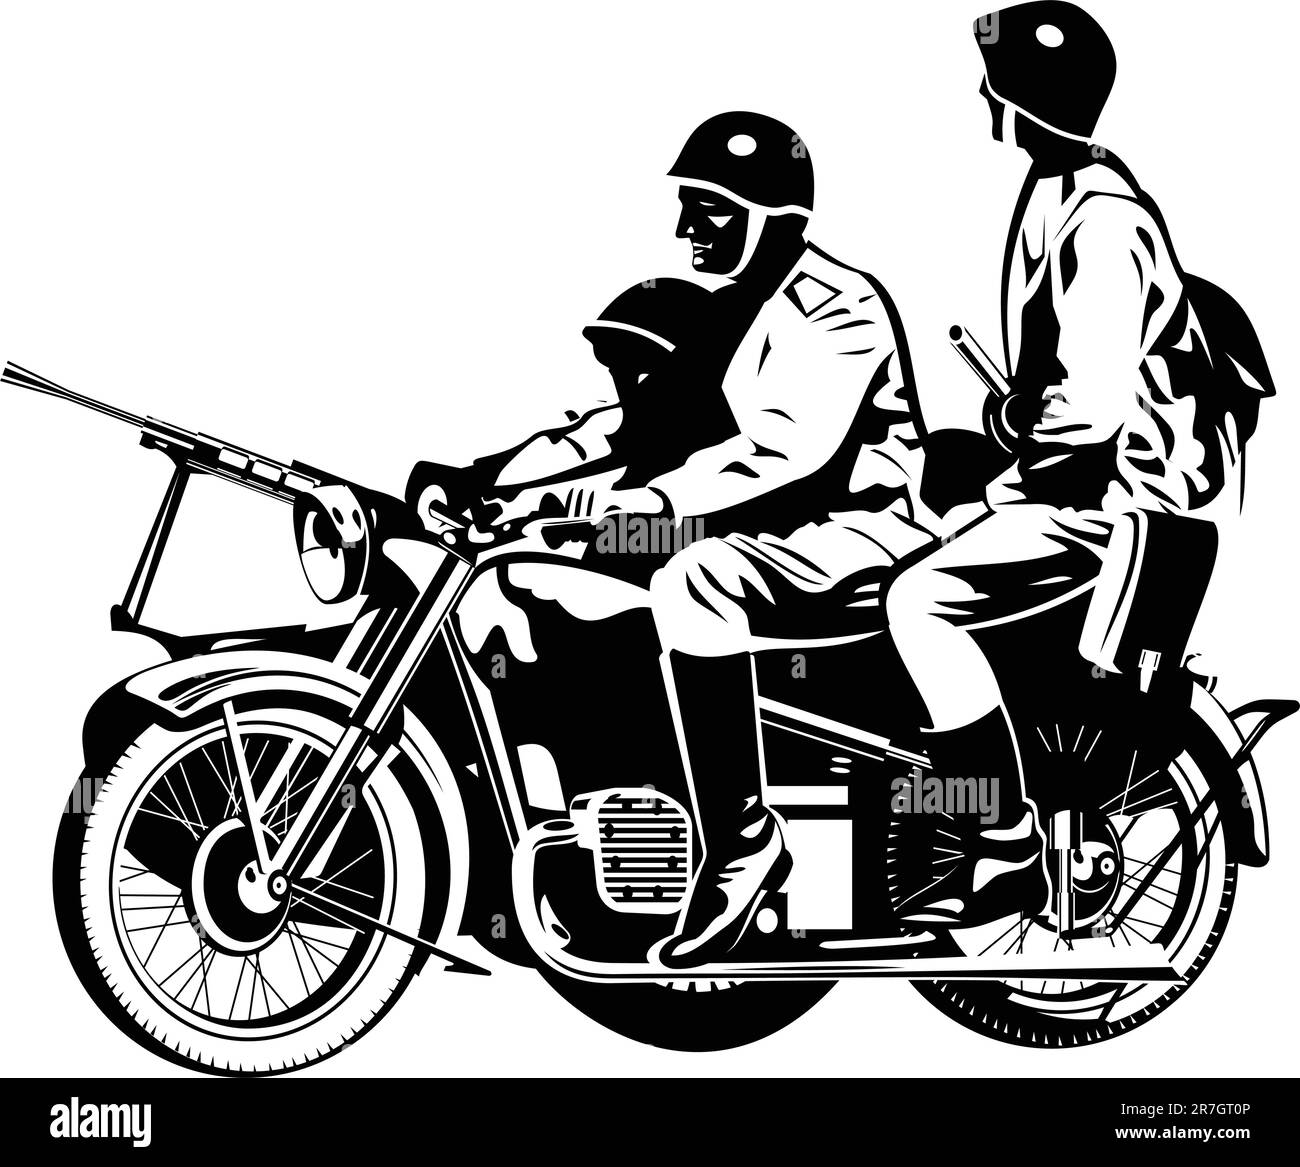 illustrazione in bianco e nero di una motocicletta con un sedile amico. Illustrazione Vettoriale